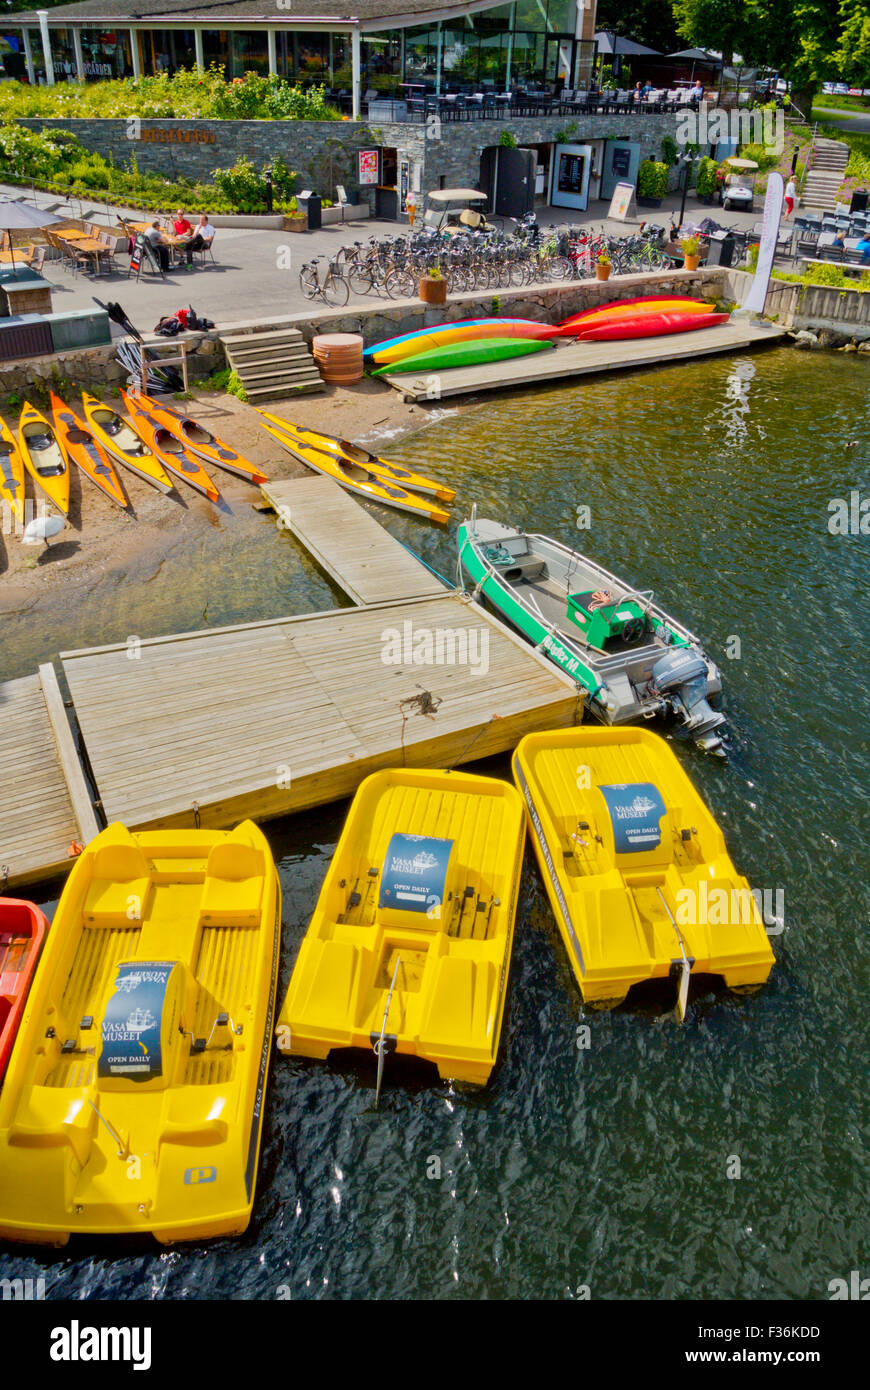 Pédalos, canoës, bateaux et des vélos à louer, Sjöcafeet, île de Djurgården, Stockholm, Suède Banque D'Images